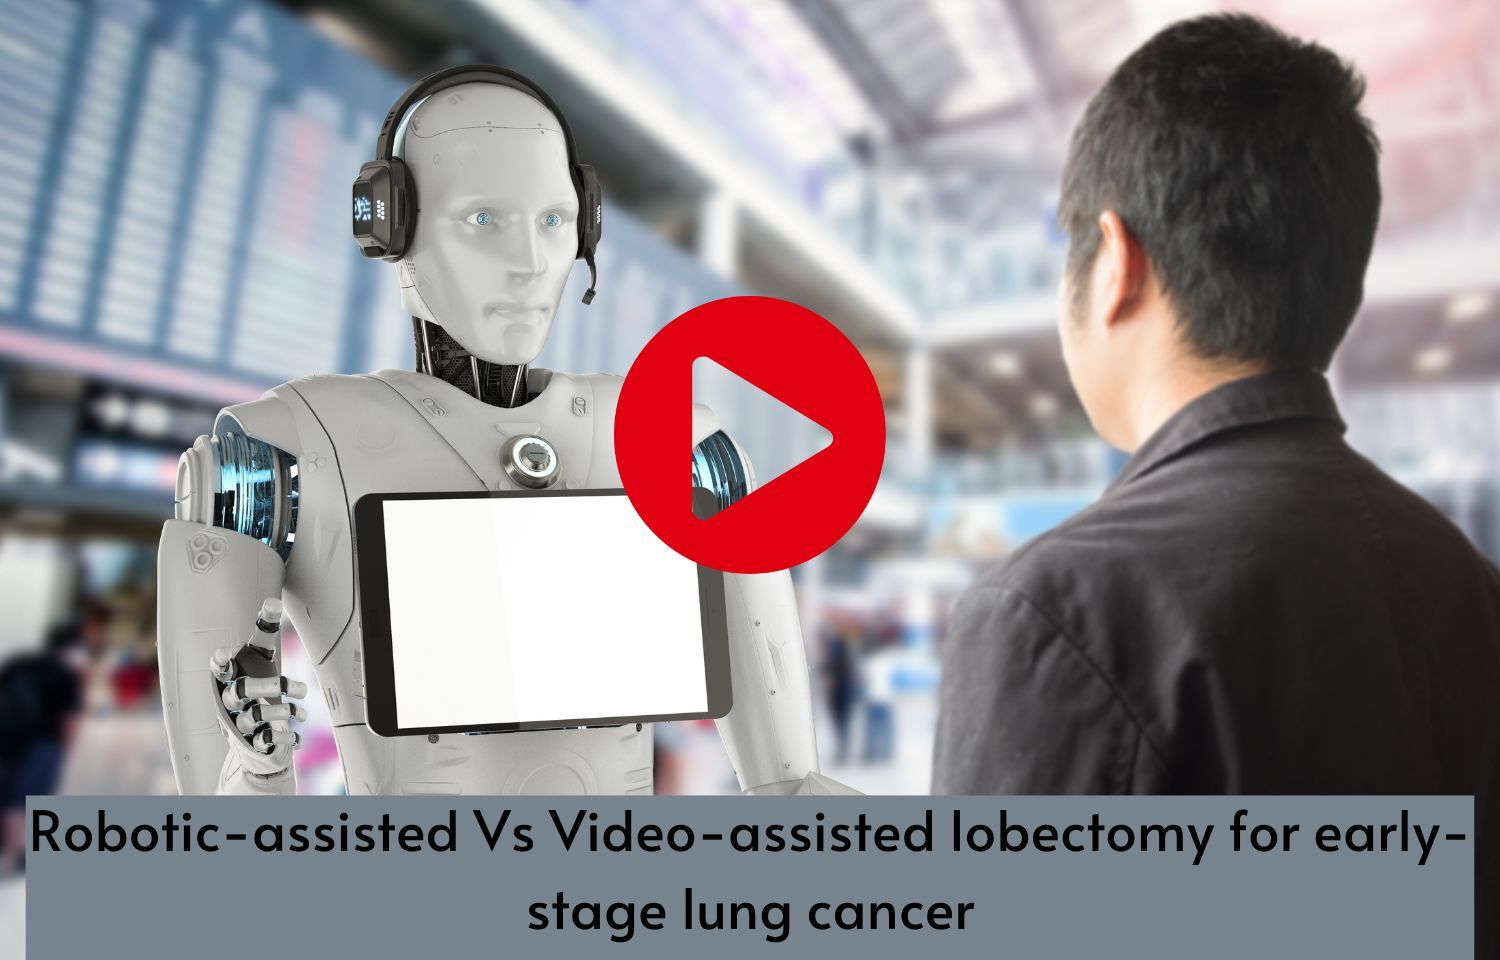 Được hỗ trợ bởi robot hiện đại, phẫu thuật phổi giai đoạn sớm trở nên an toàn và hiệu quả hơn bao giờ hết. Hãy khám phá hình ảnh của công nghệ y tế đầy hứa hẹn này ngay bây giờ!